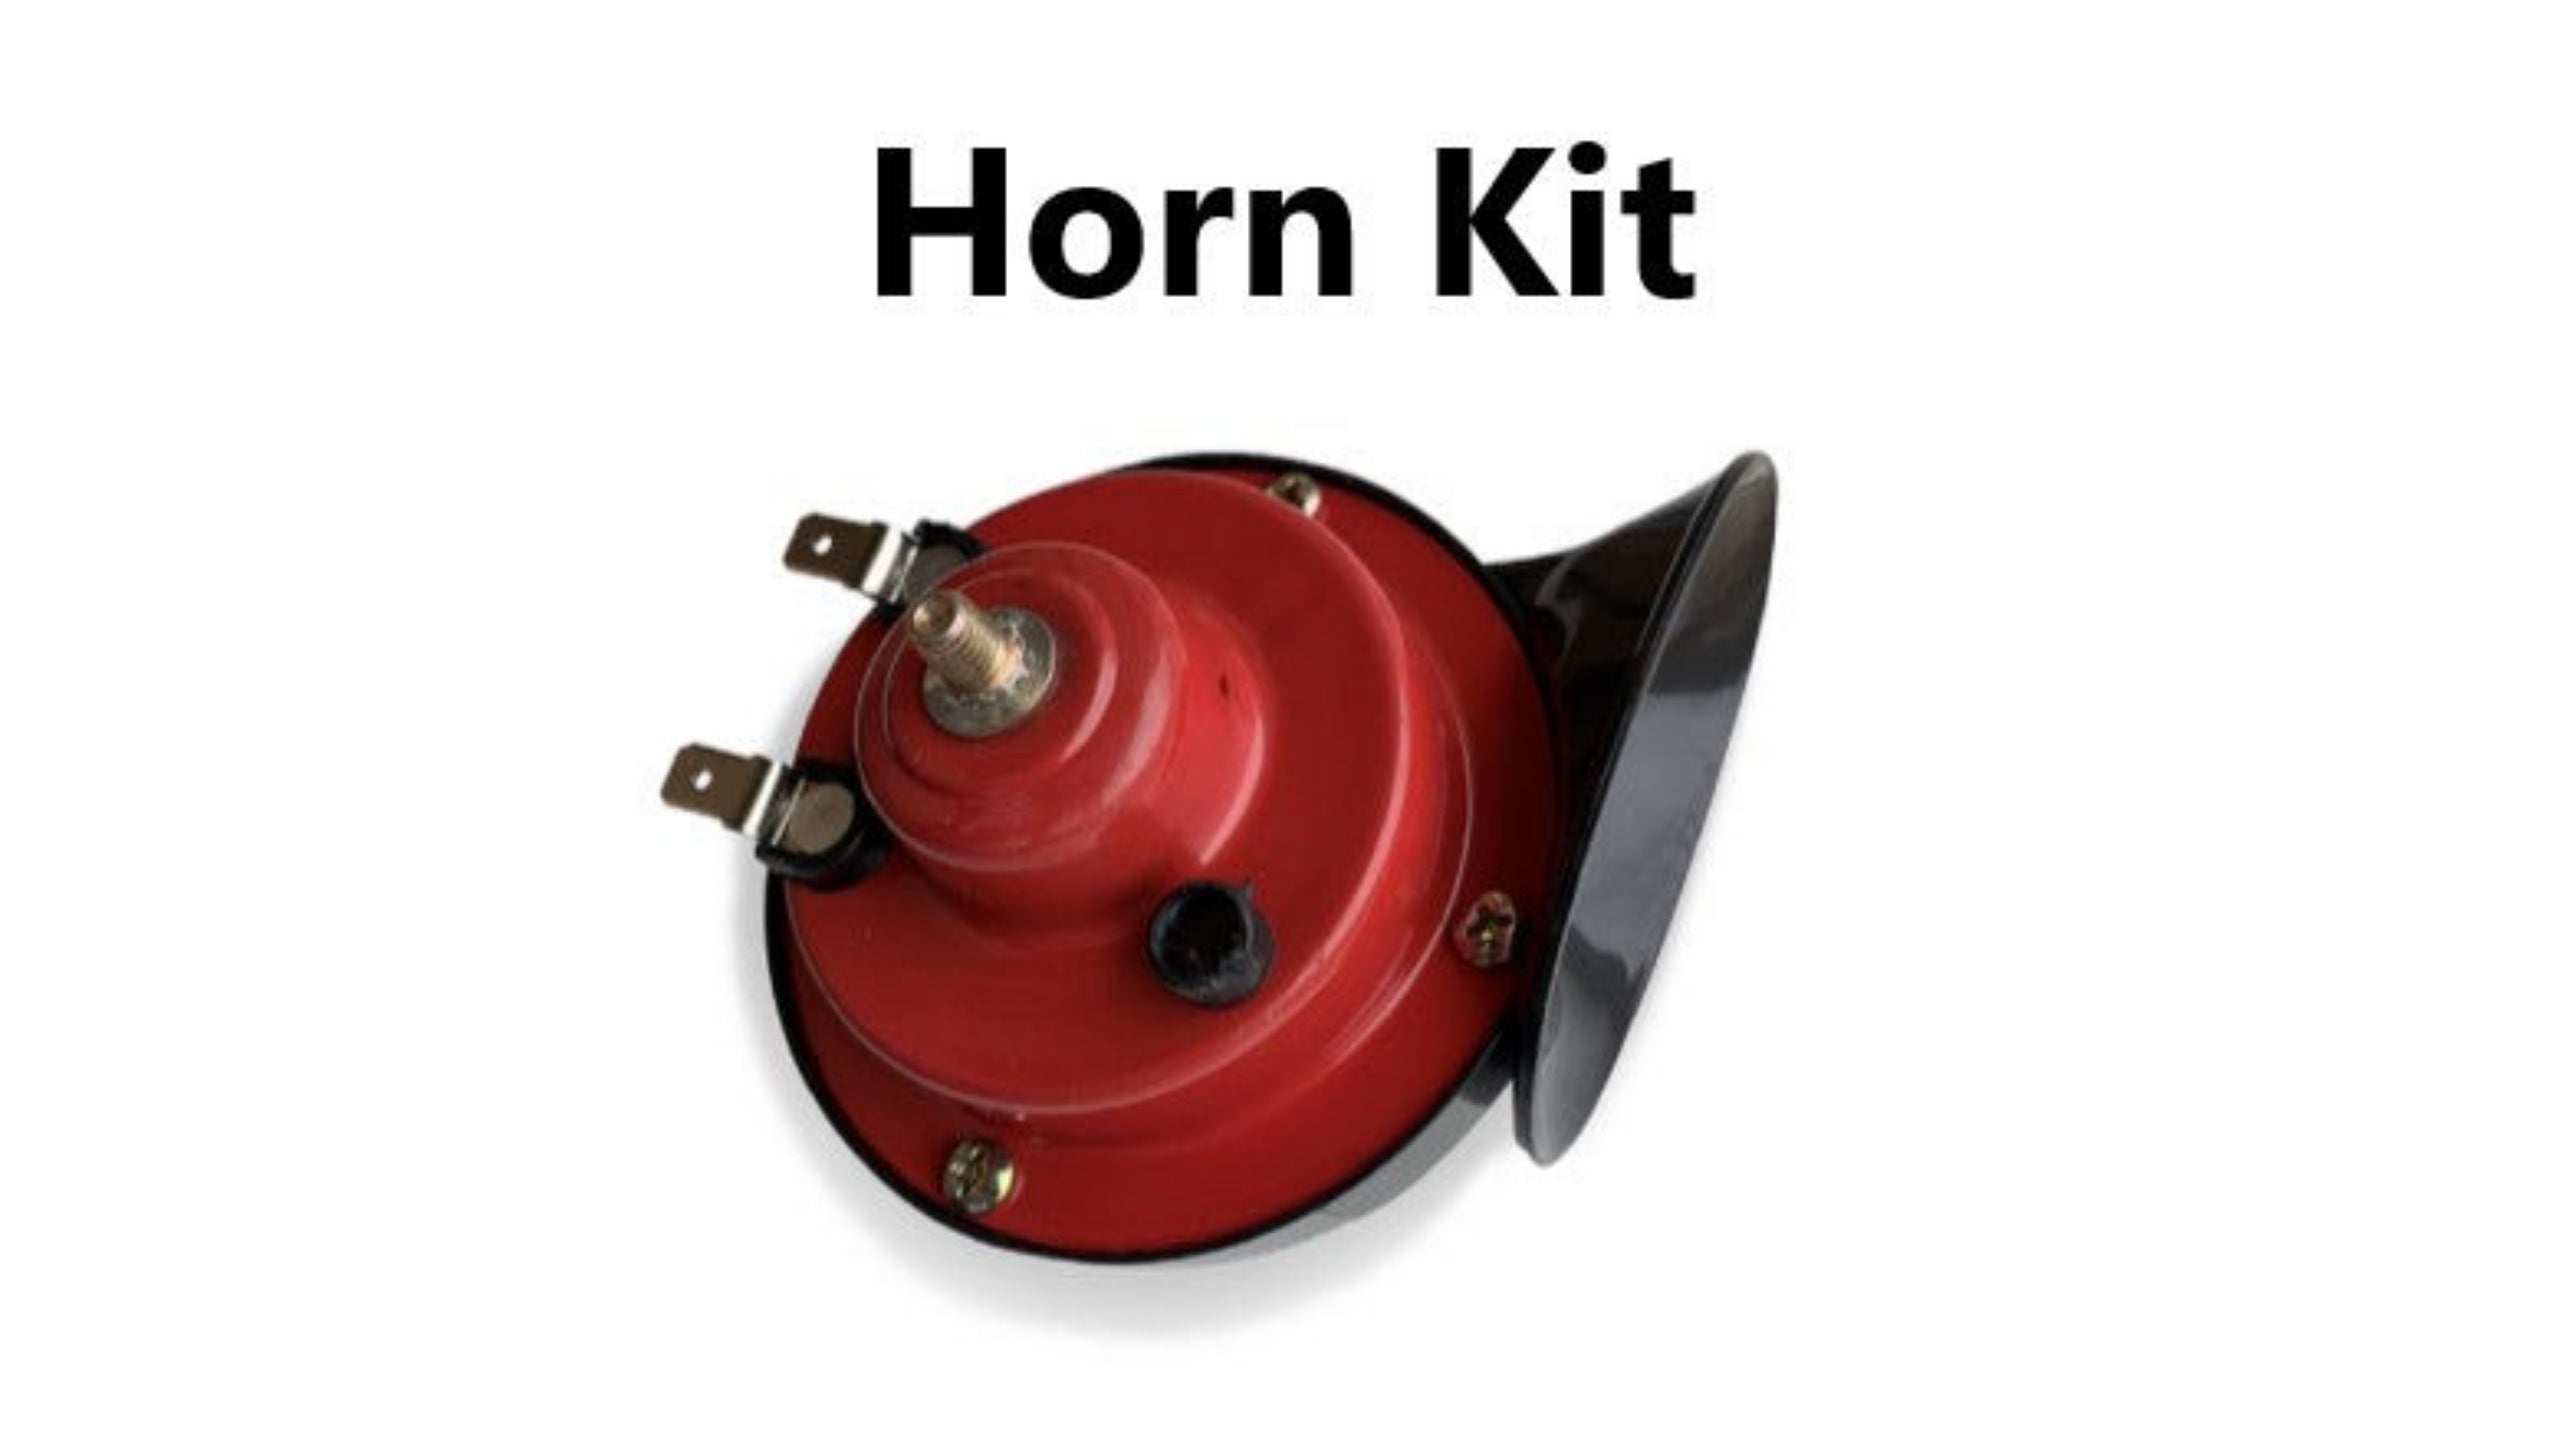 Horn kit